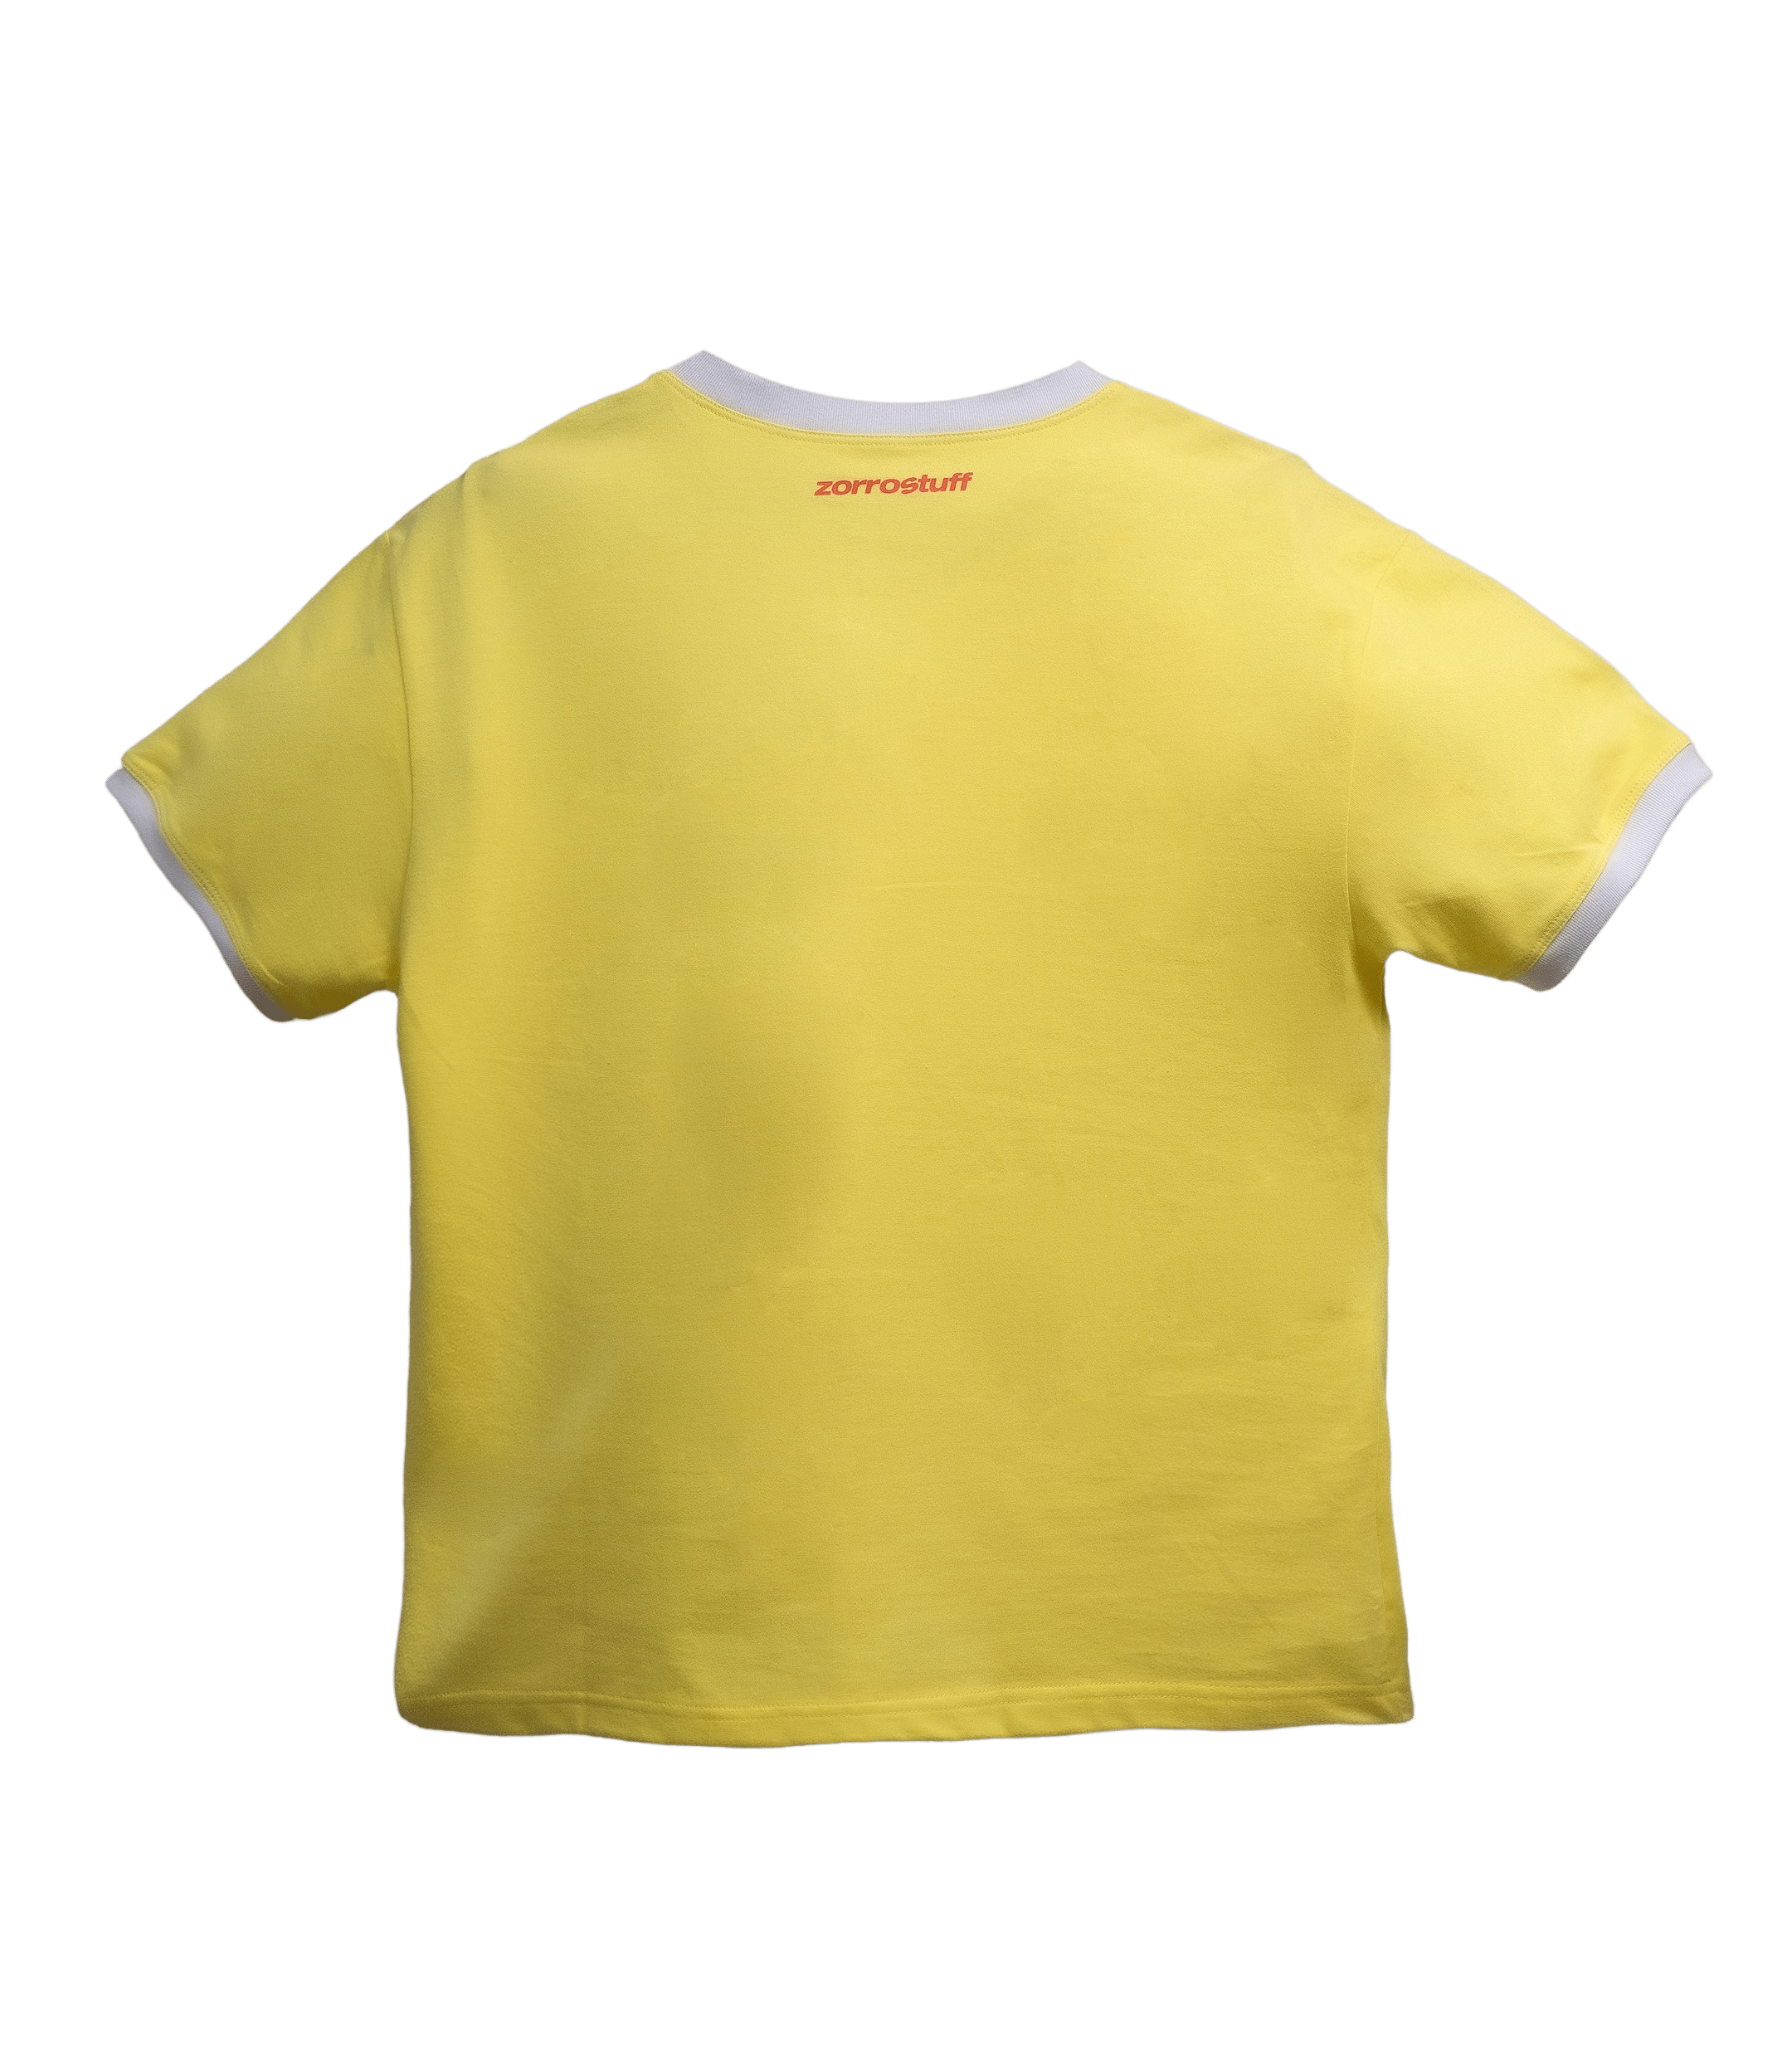 Zorro Stuff T-Shirts T-Shirt 90S Cherry Yellow